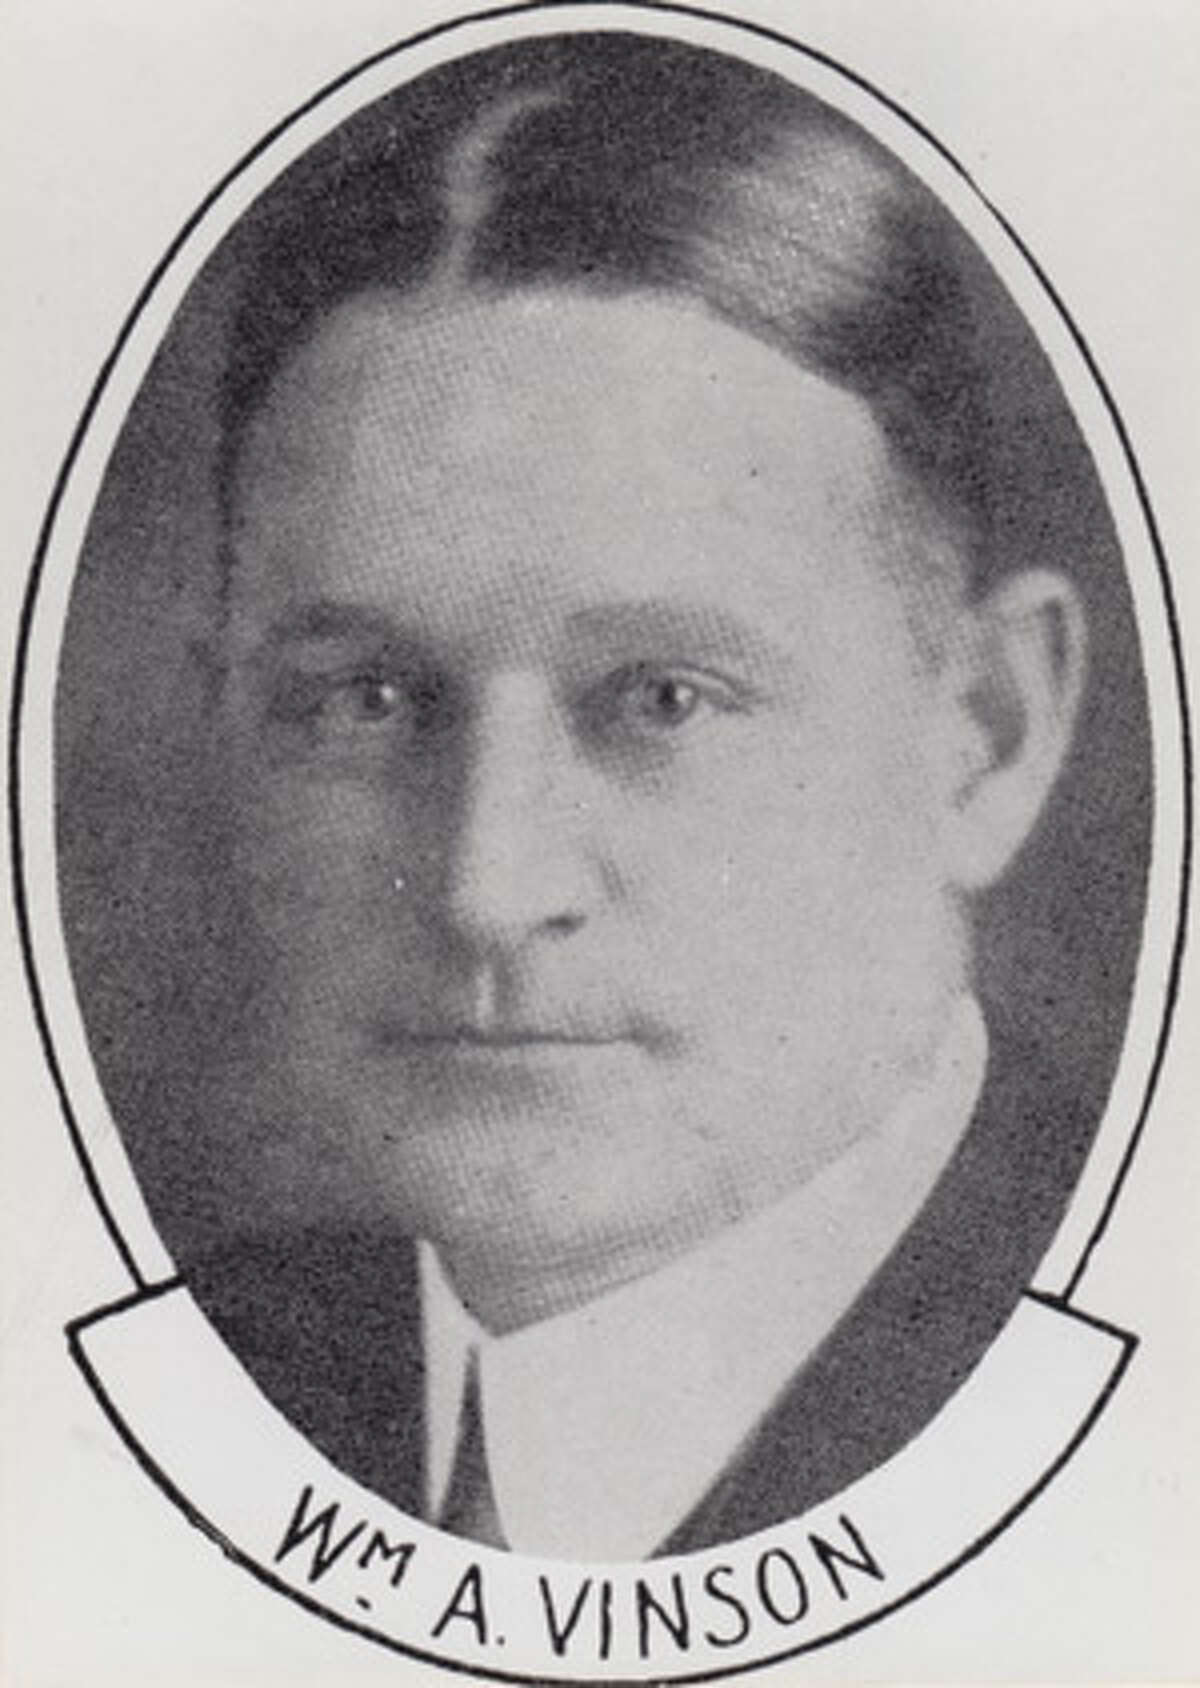 William A. Vinson